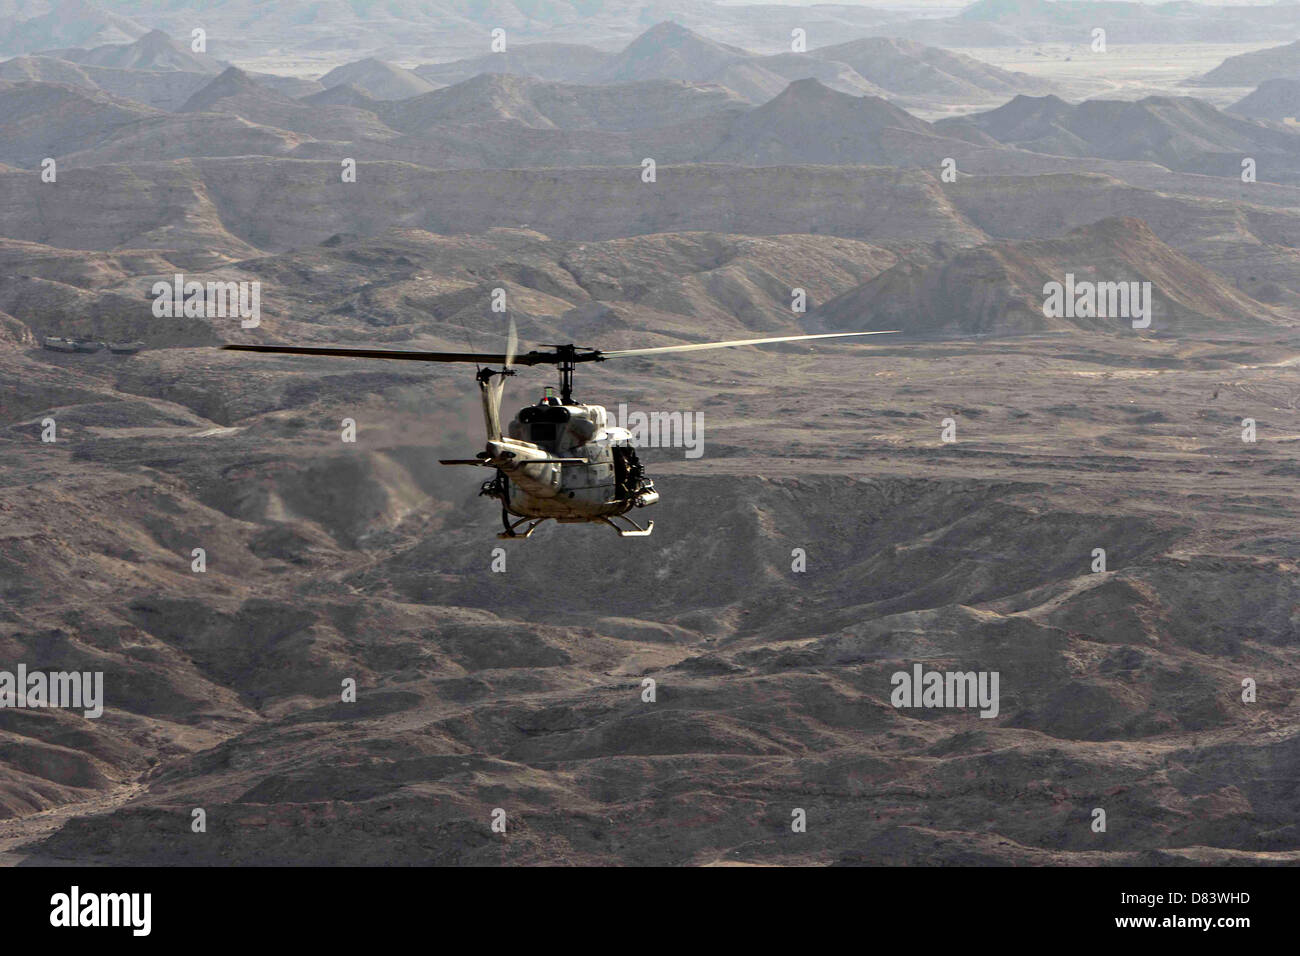 Ein US Marine Corps UH-1N Huey Gunship während einer Übung 29. April 2013 in Afghanistan. Stockfoto